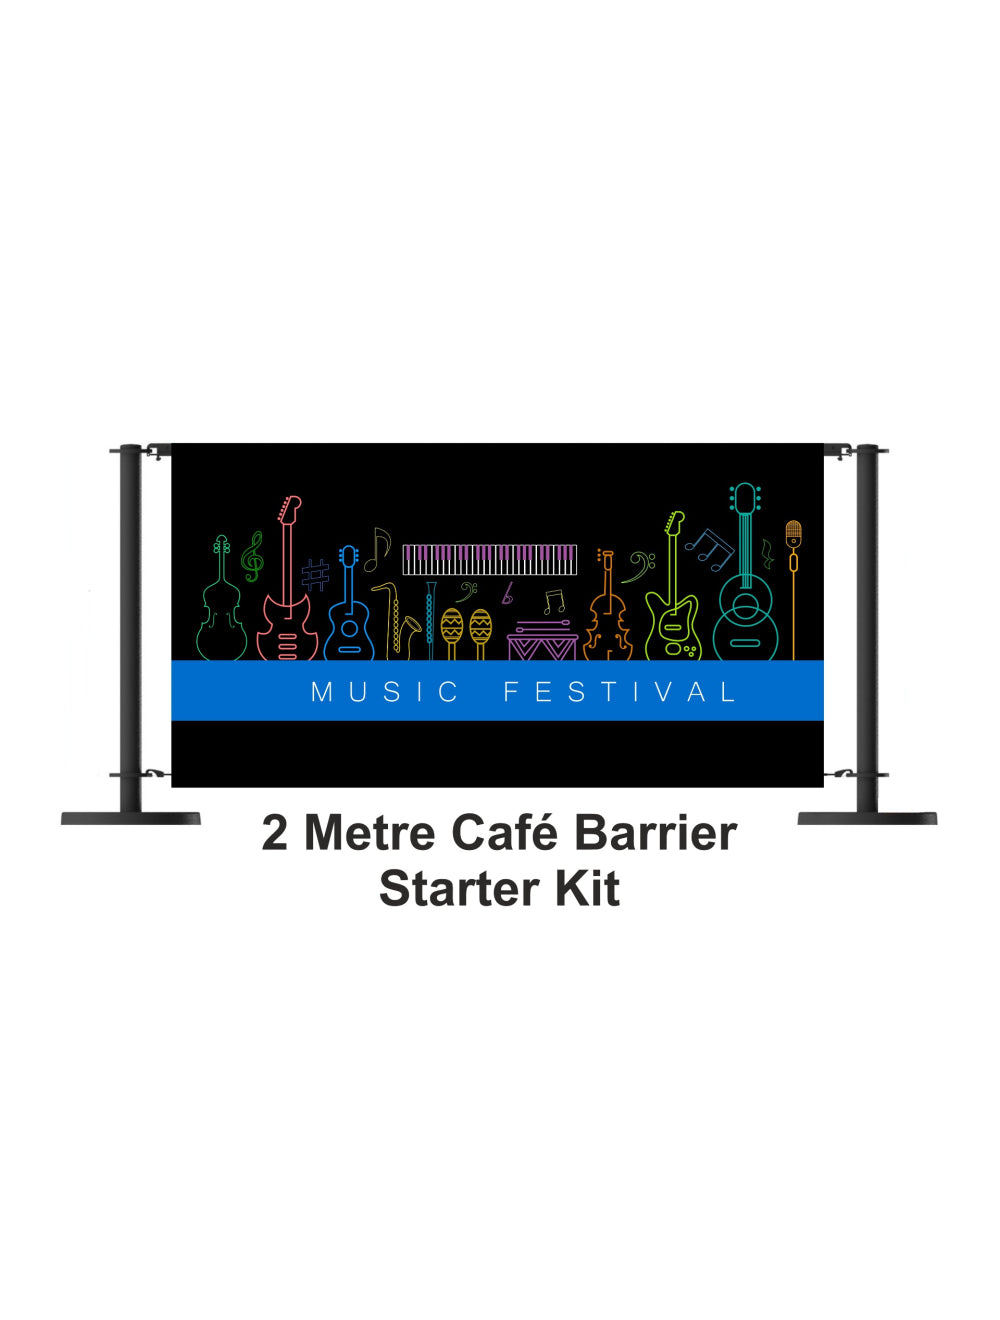 Kit de inicio de barrera de 2 metros de cafetería